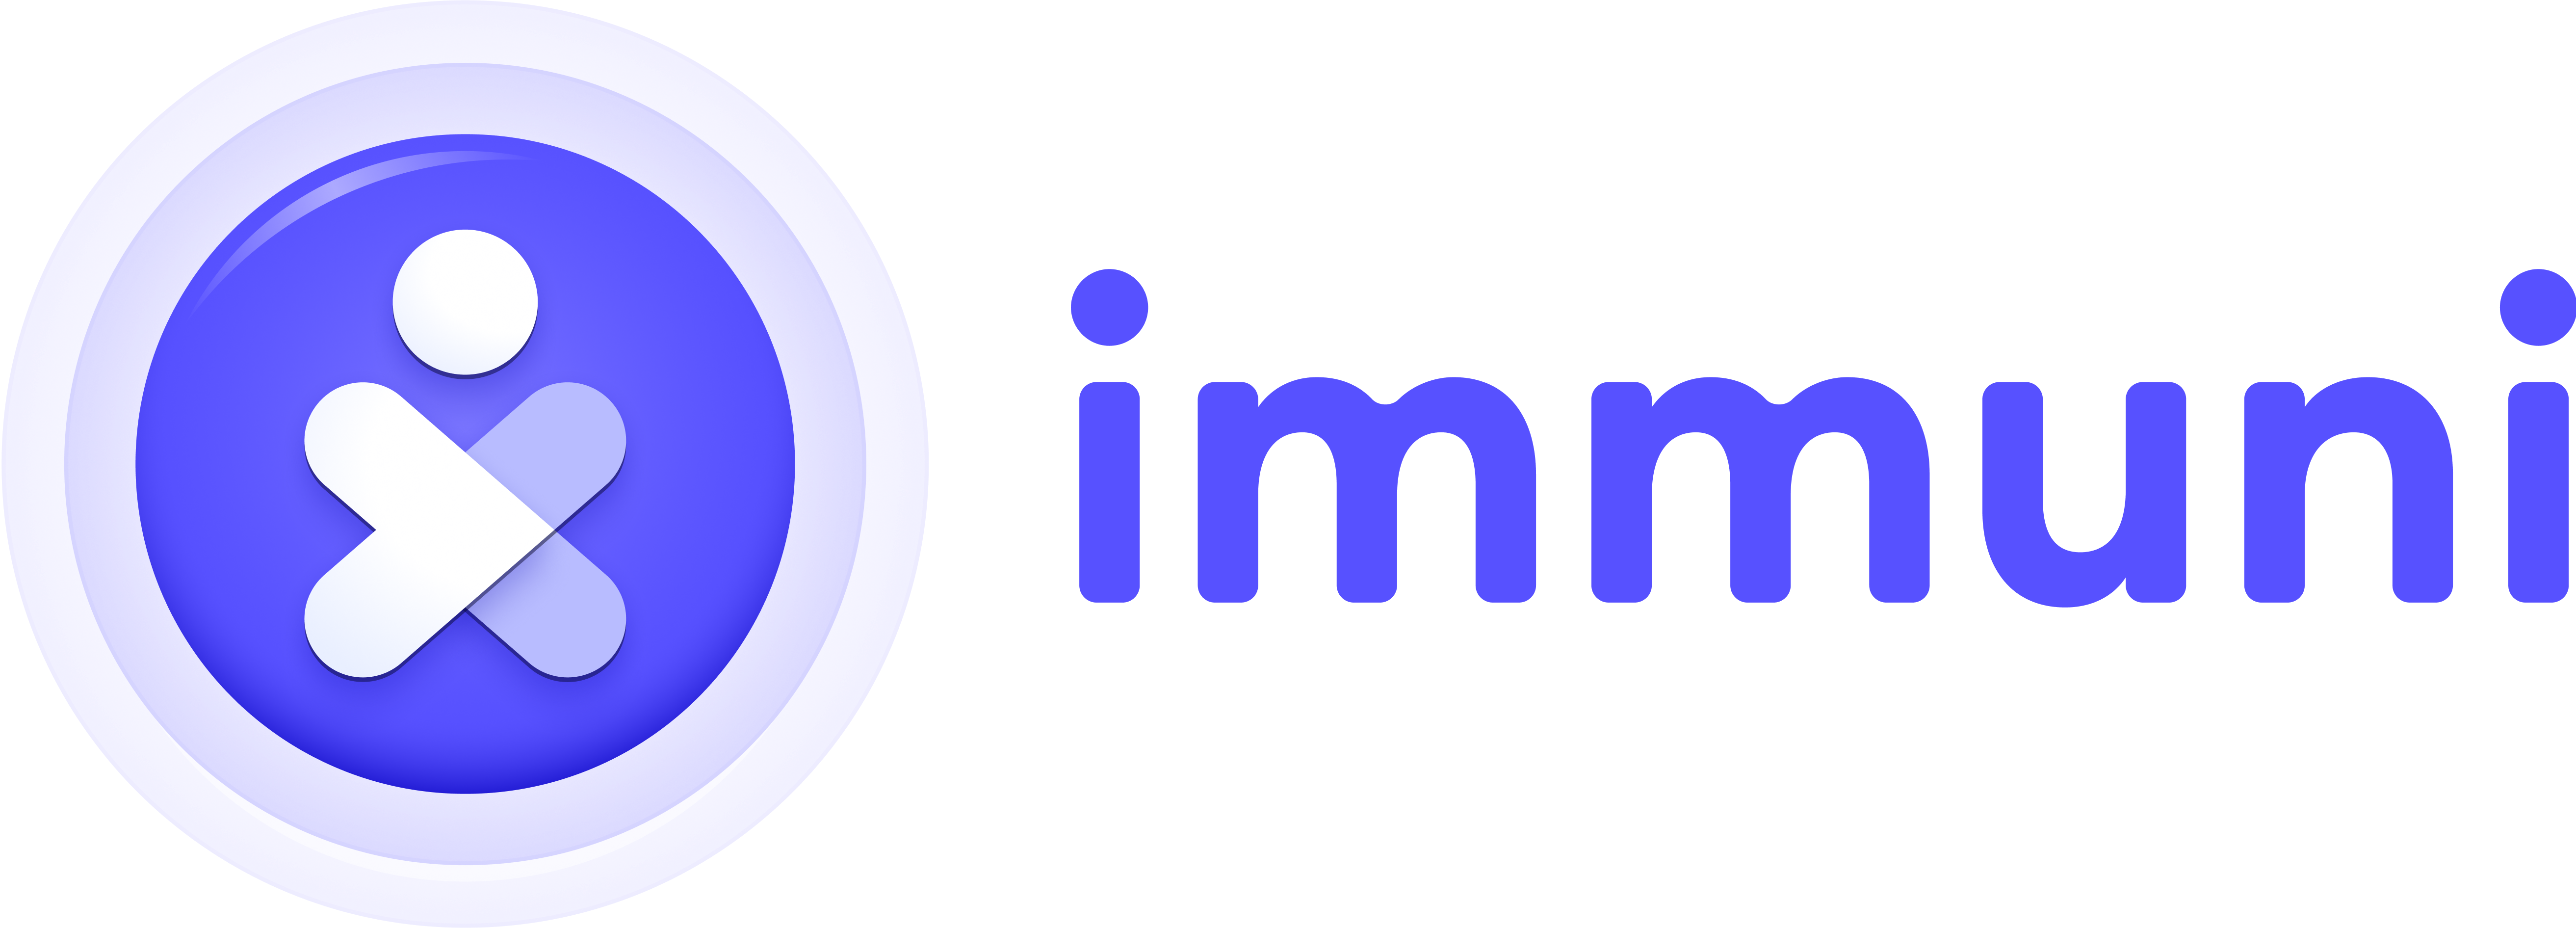 Immuni Logo - 3D version - Horizontal.png